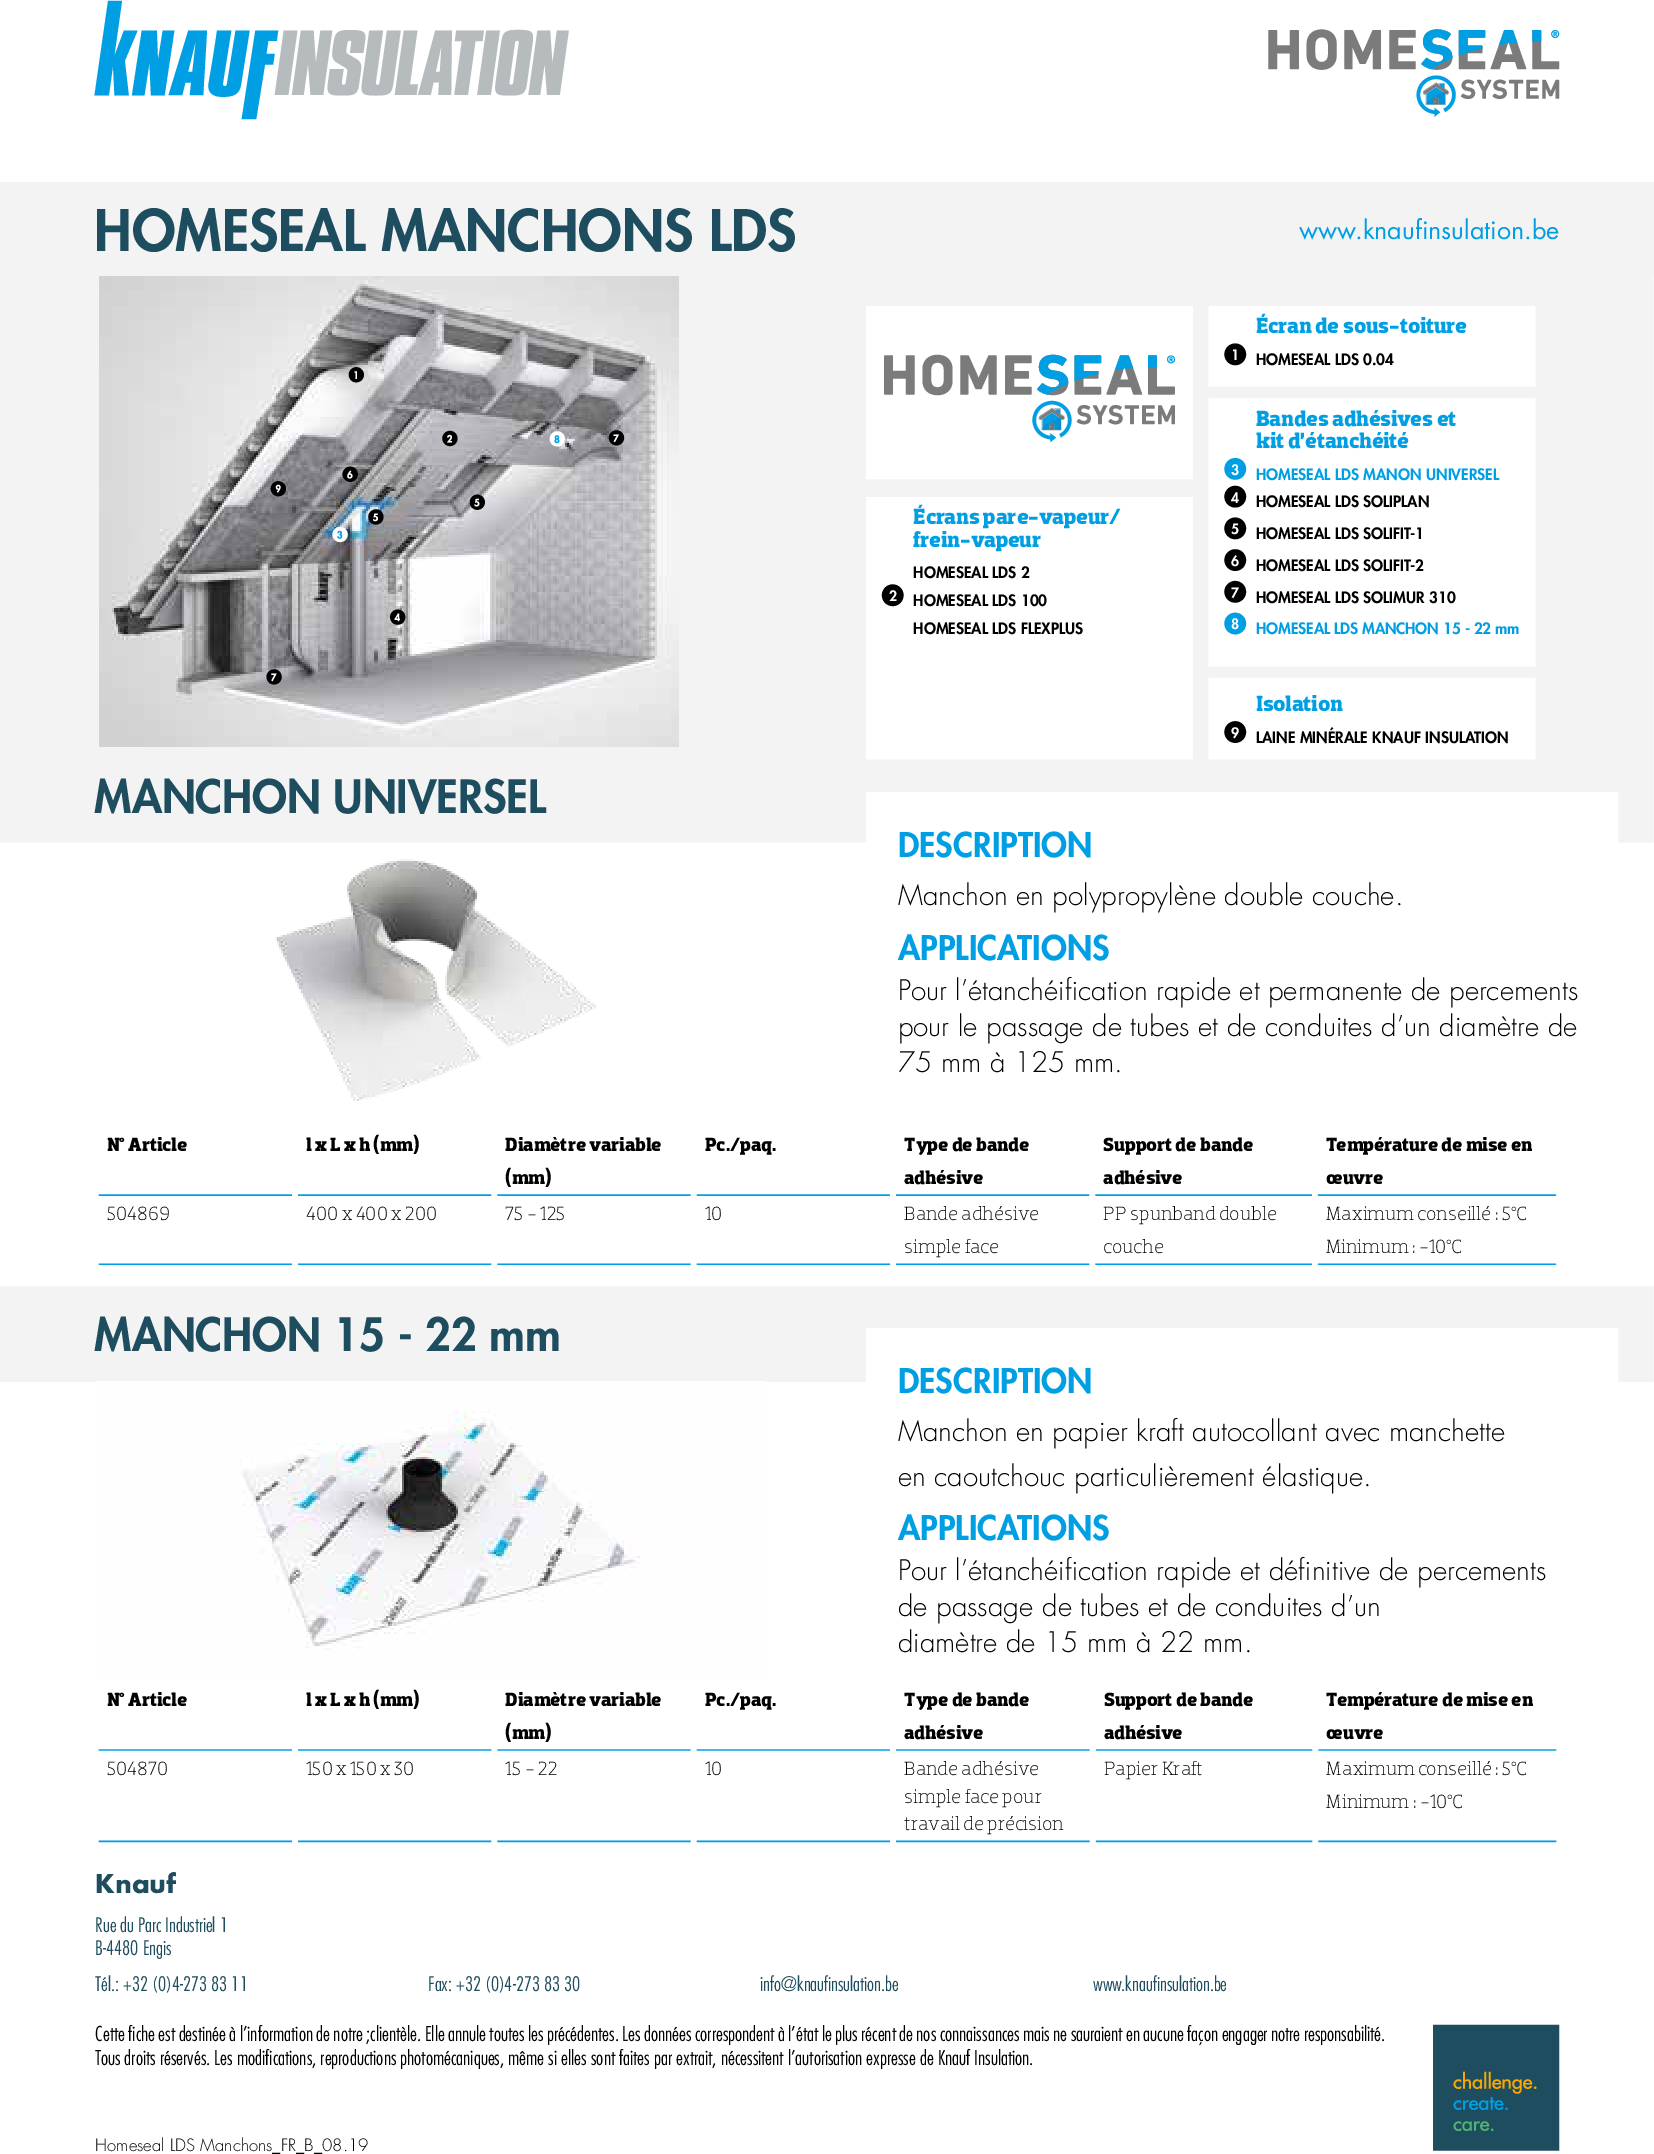 Homeseal LDS Manchon universel - Fiche technique - Produit